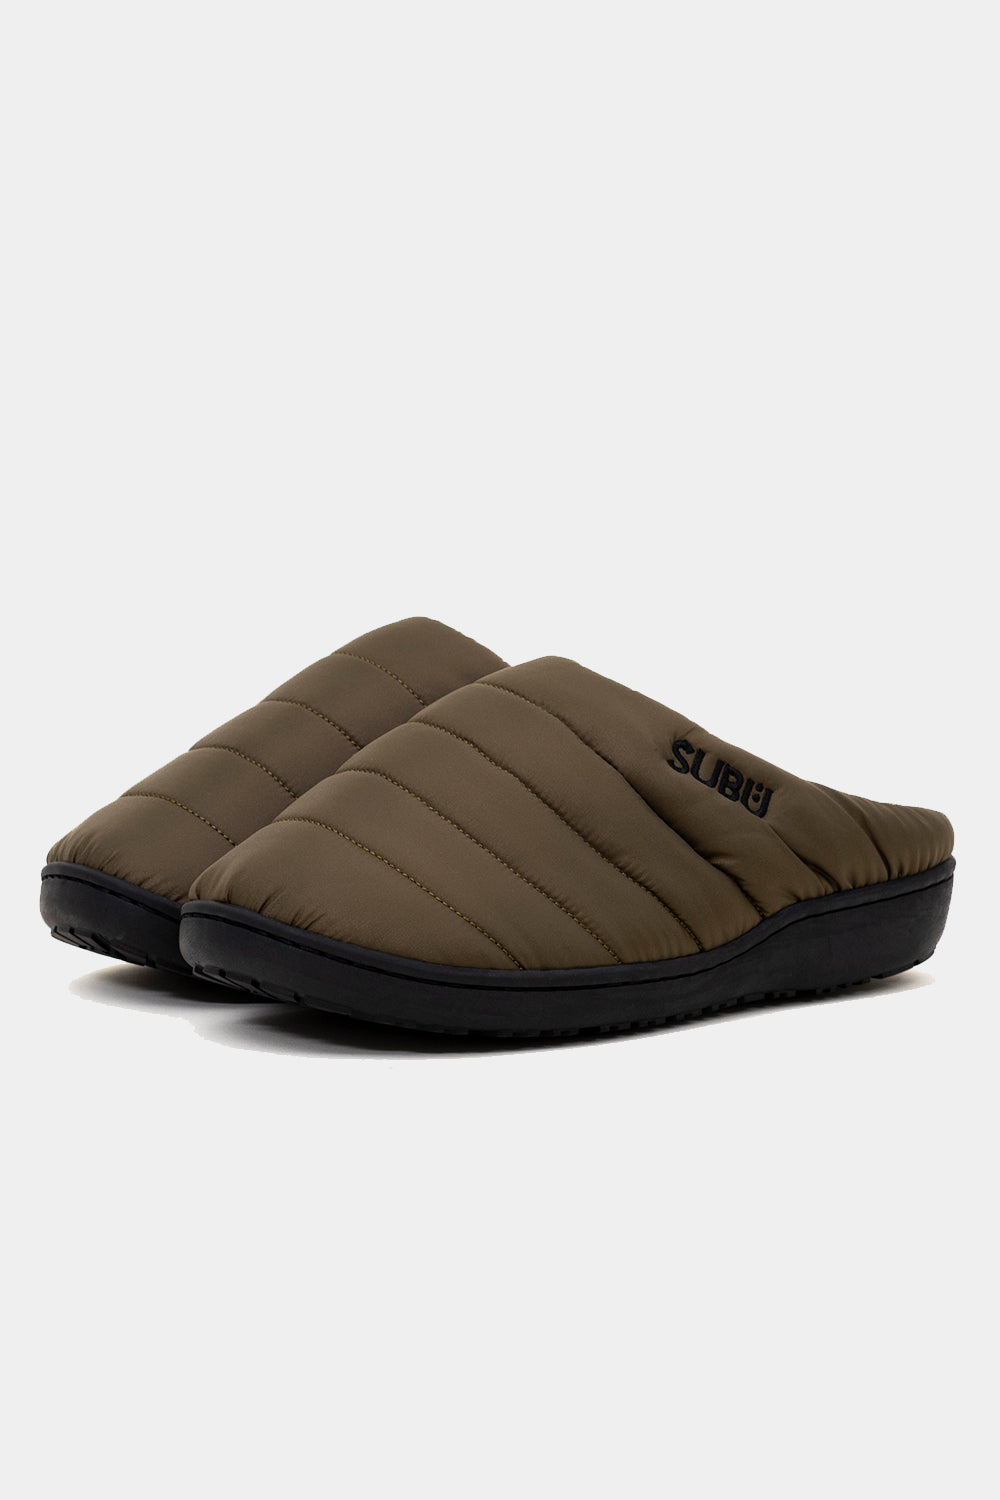 SUBU Indoor Outdoor Slippers (Mountain Khaki)